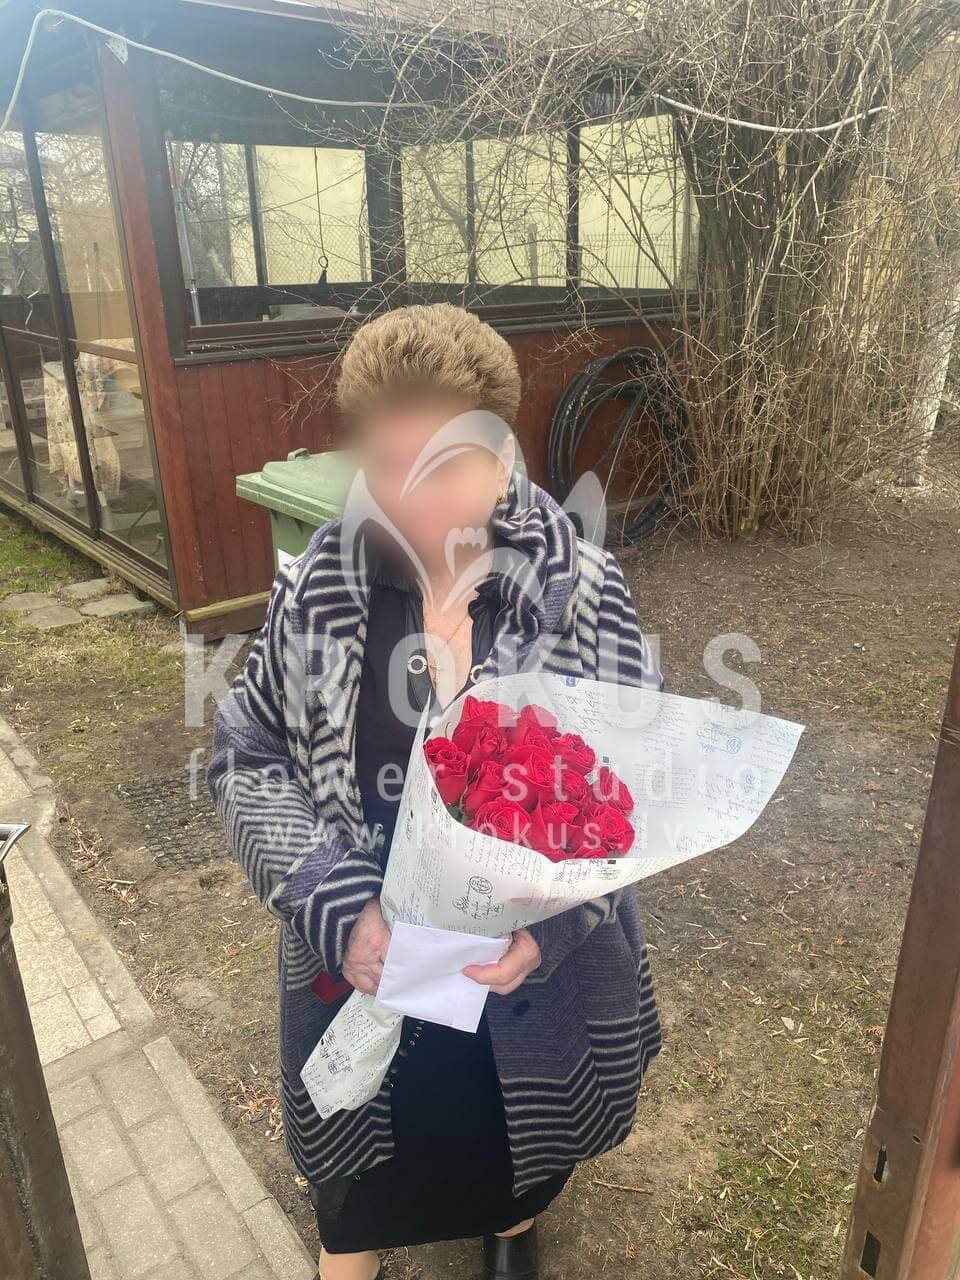 Доставка цветов в город Рига (красные розы)